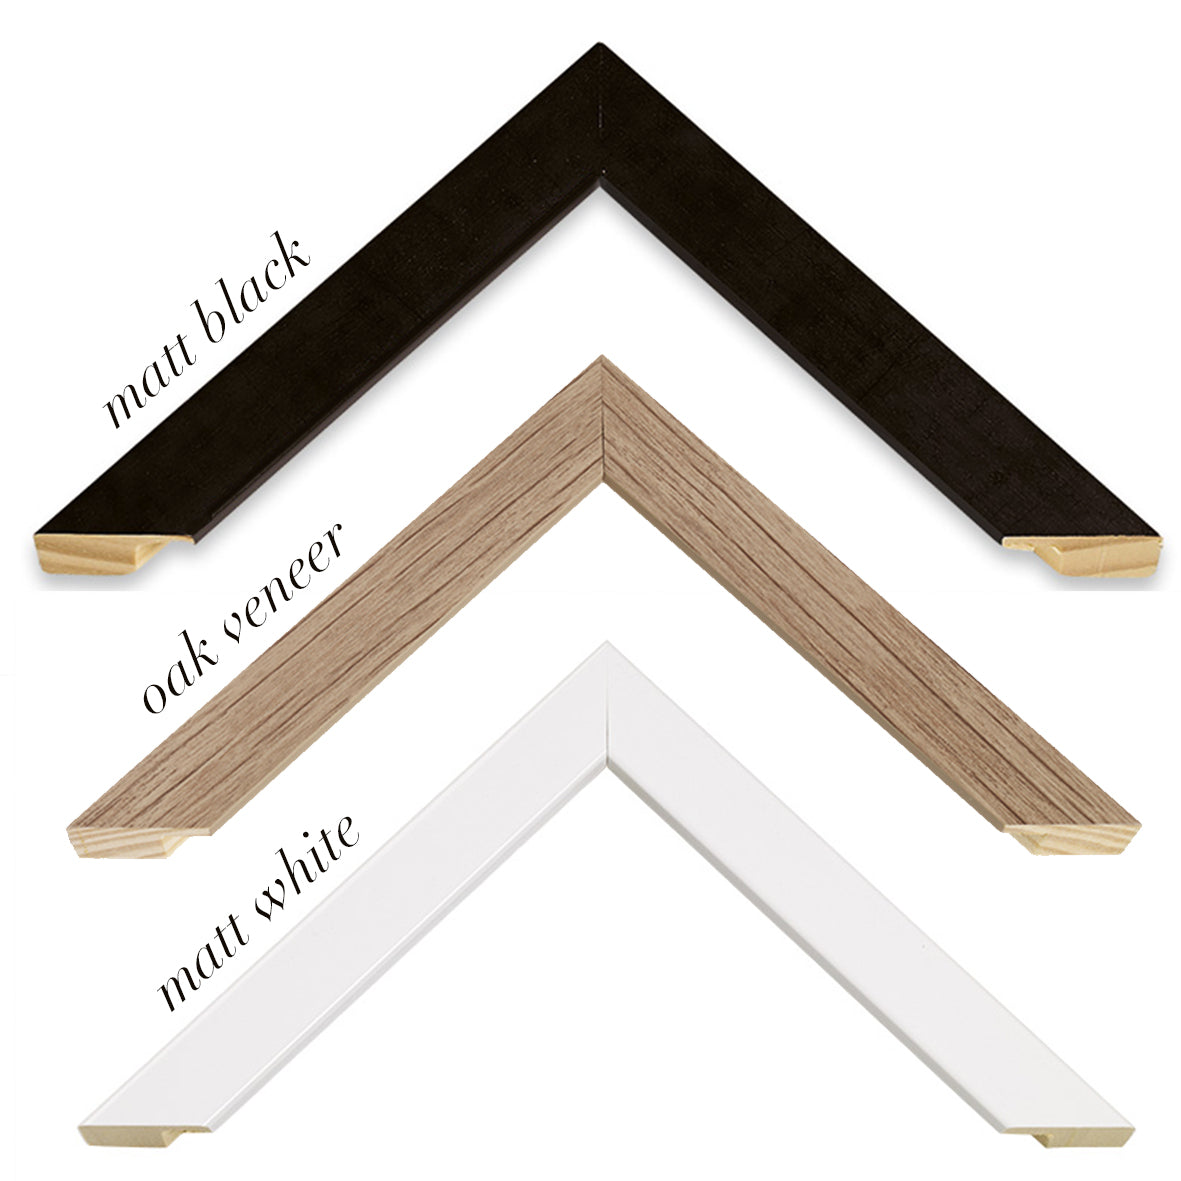 sample frames in matt black, matt white and oak veneer